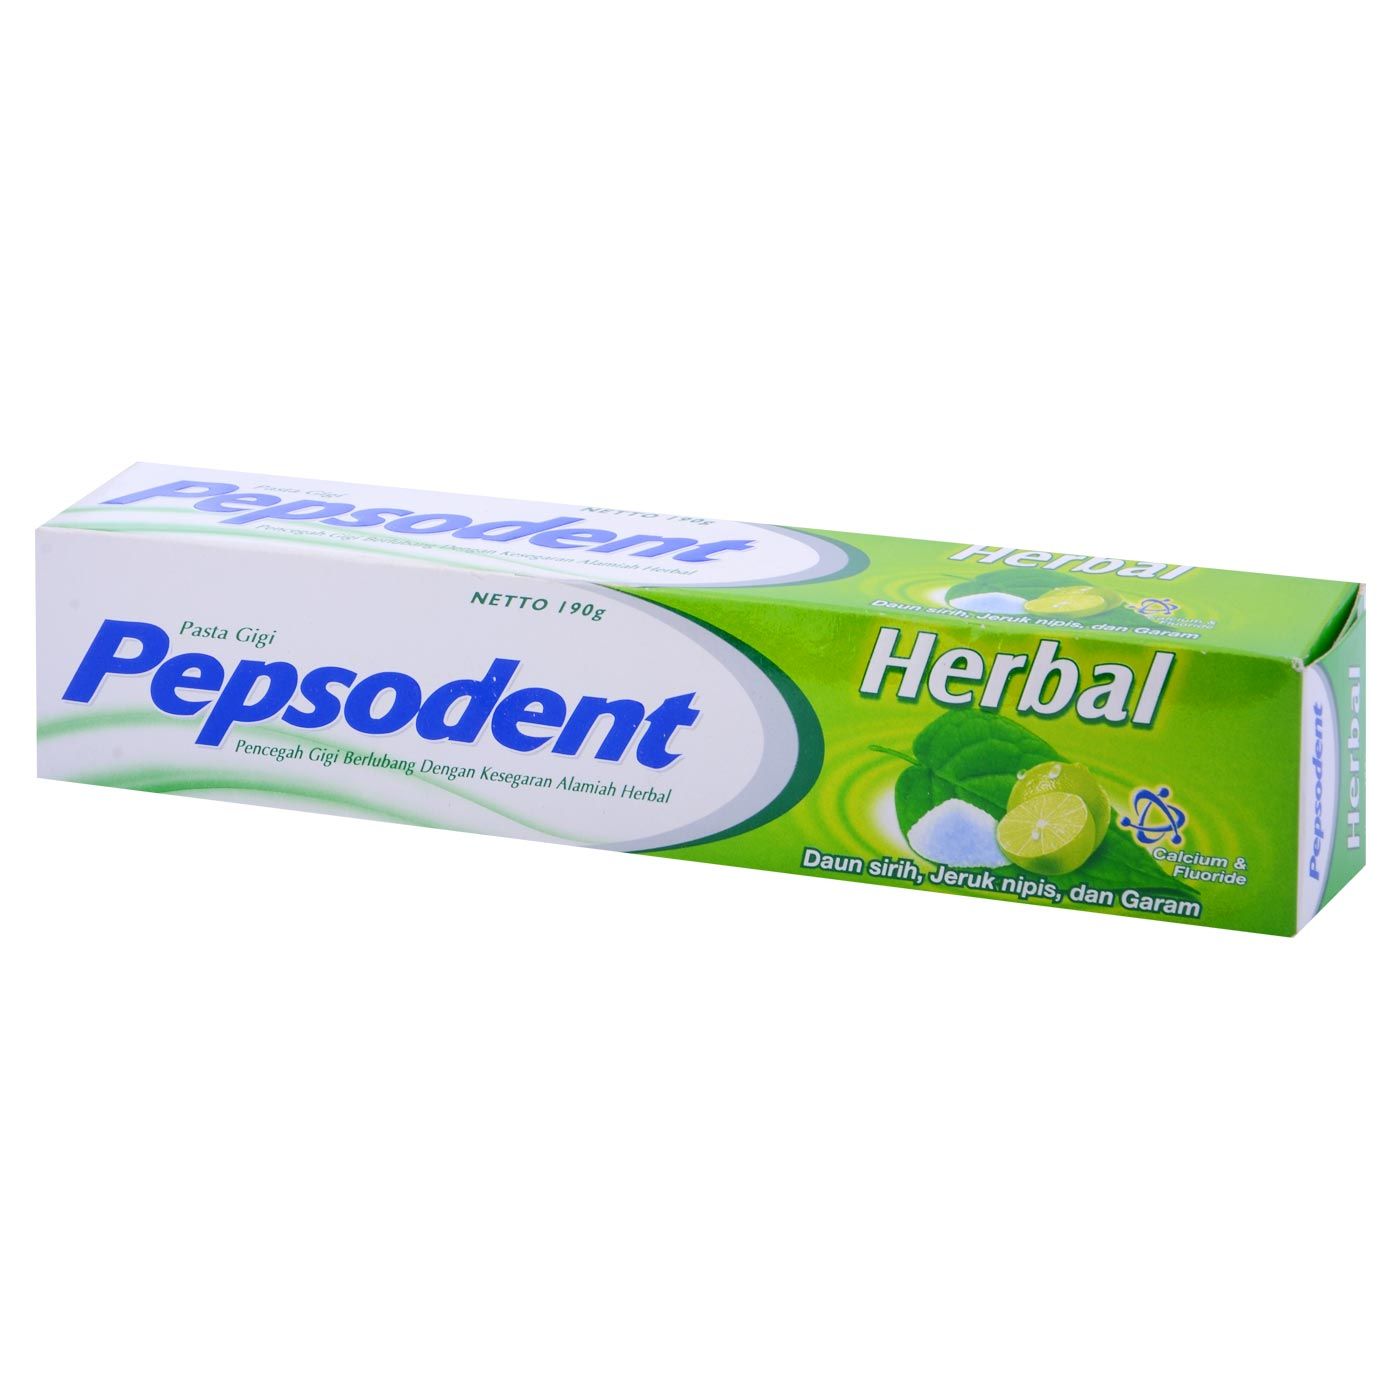 Pepsodent Action 123 PAsta gigi Herbal 190g - 1